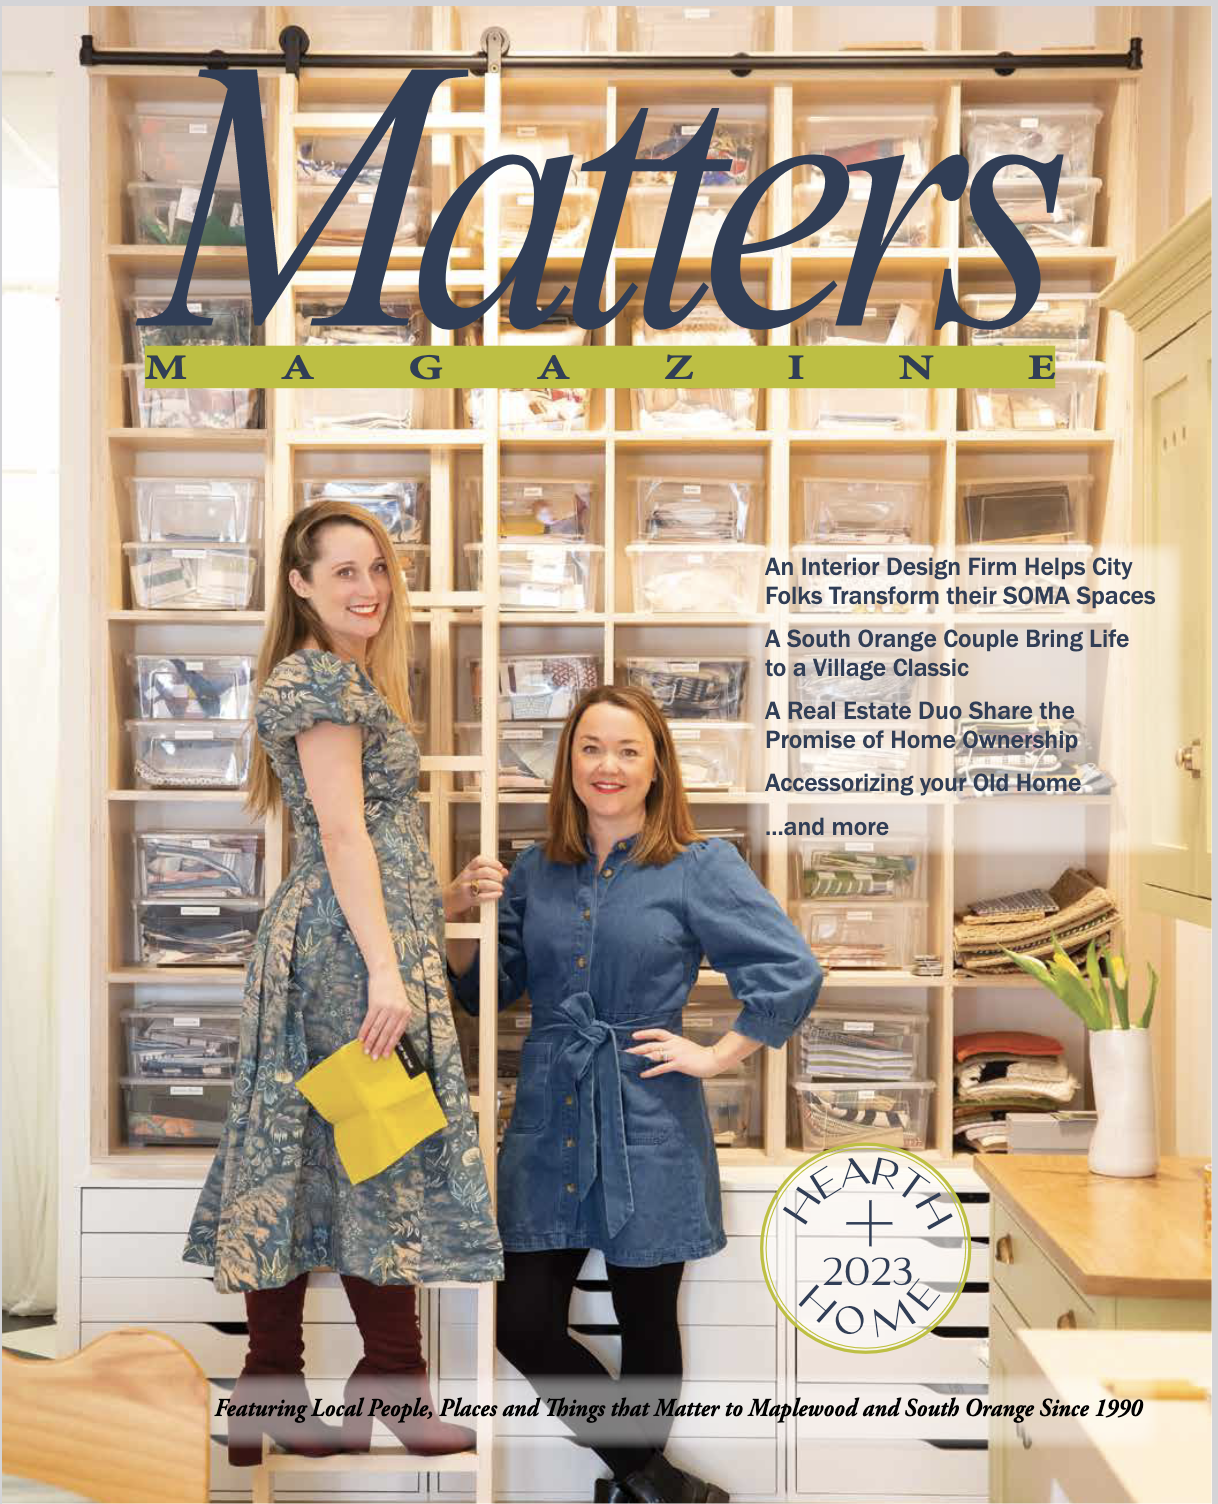 Matters Magazine